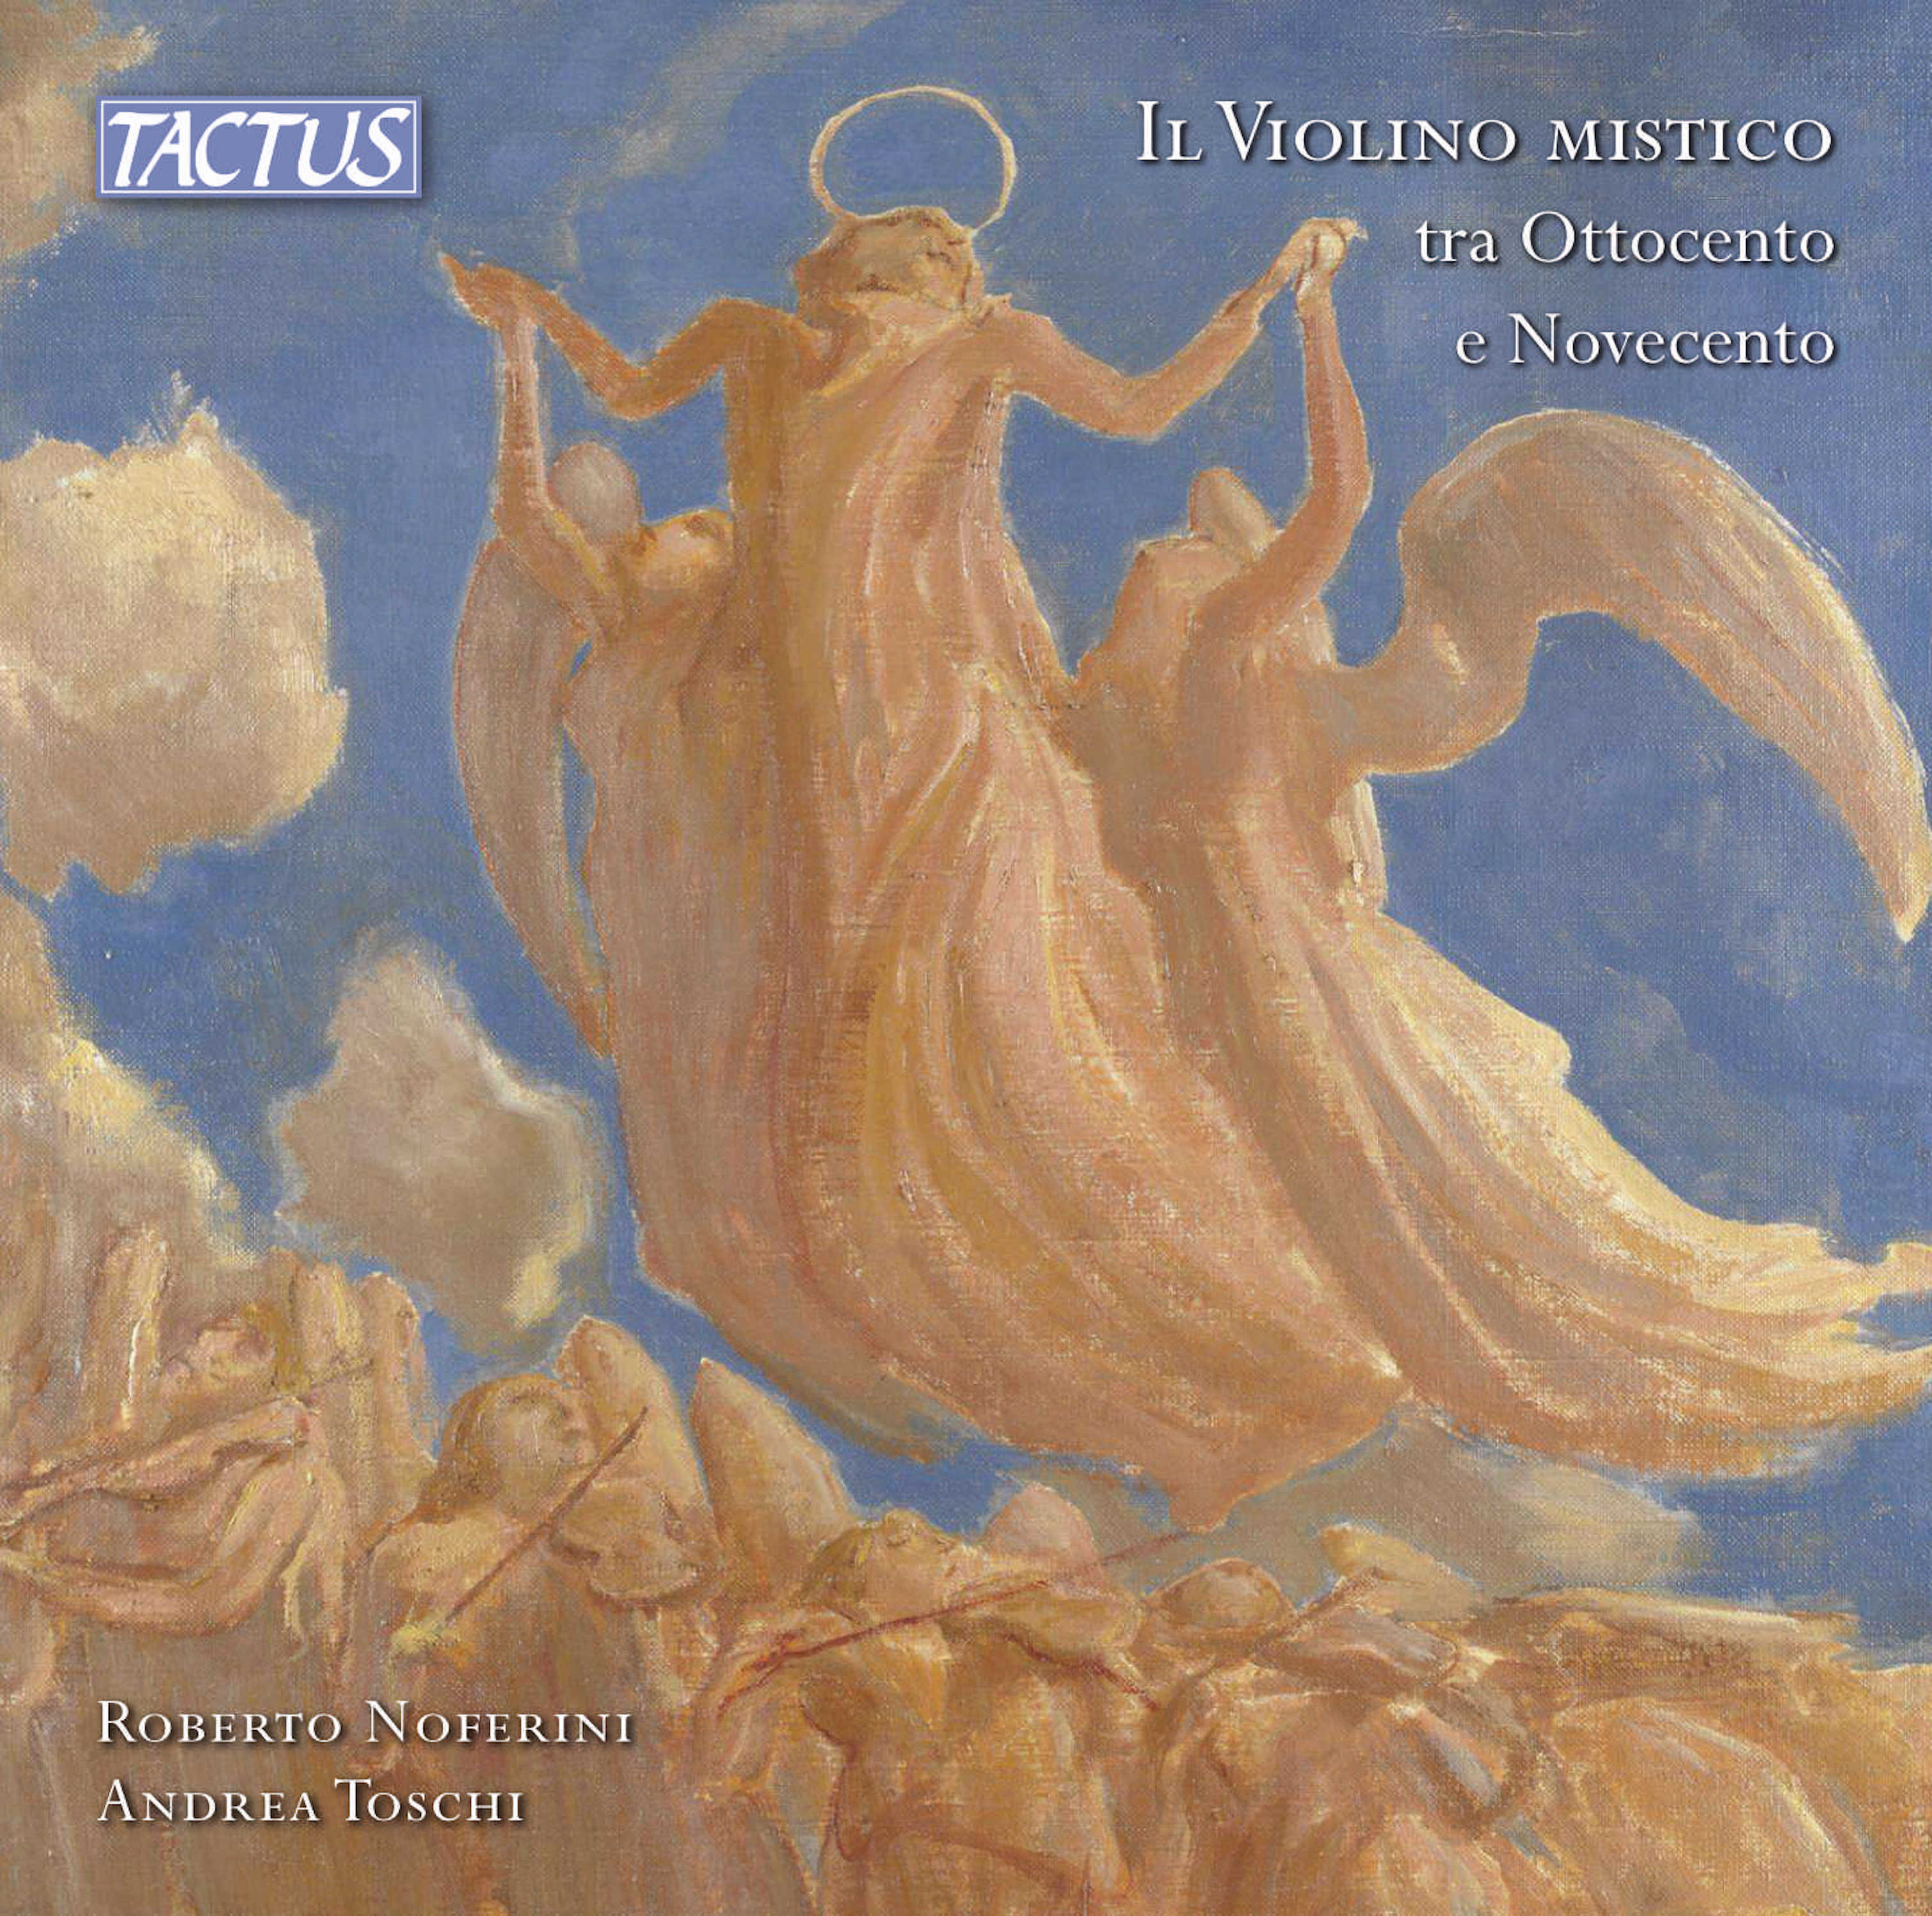  CD Il violino mistico tra Ottocento e Novecento